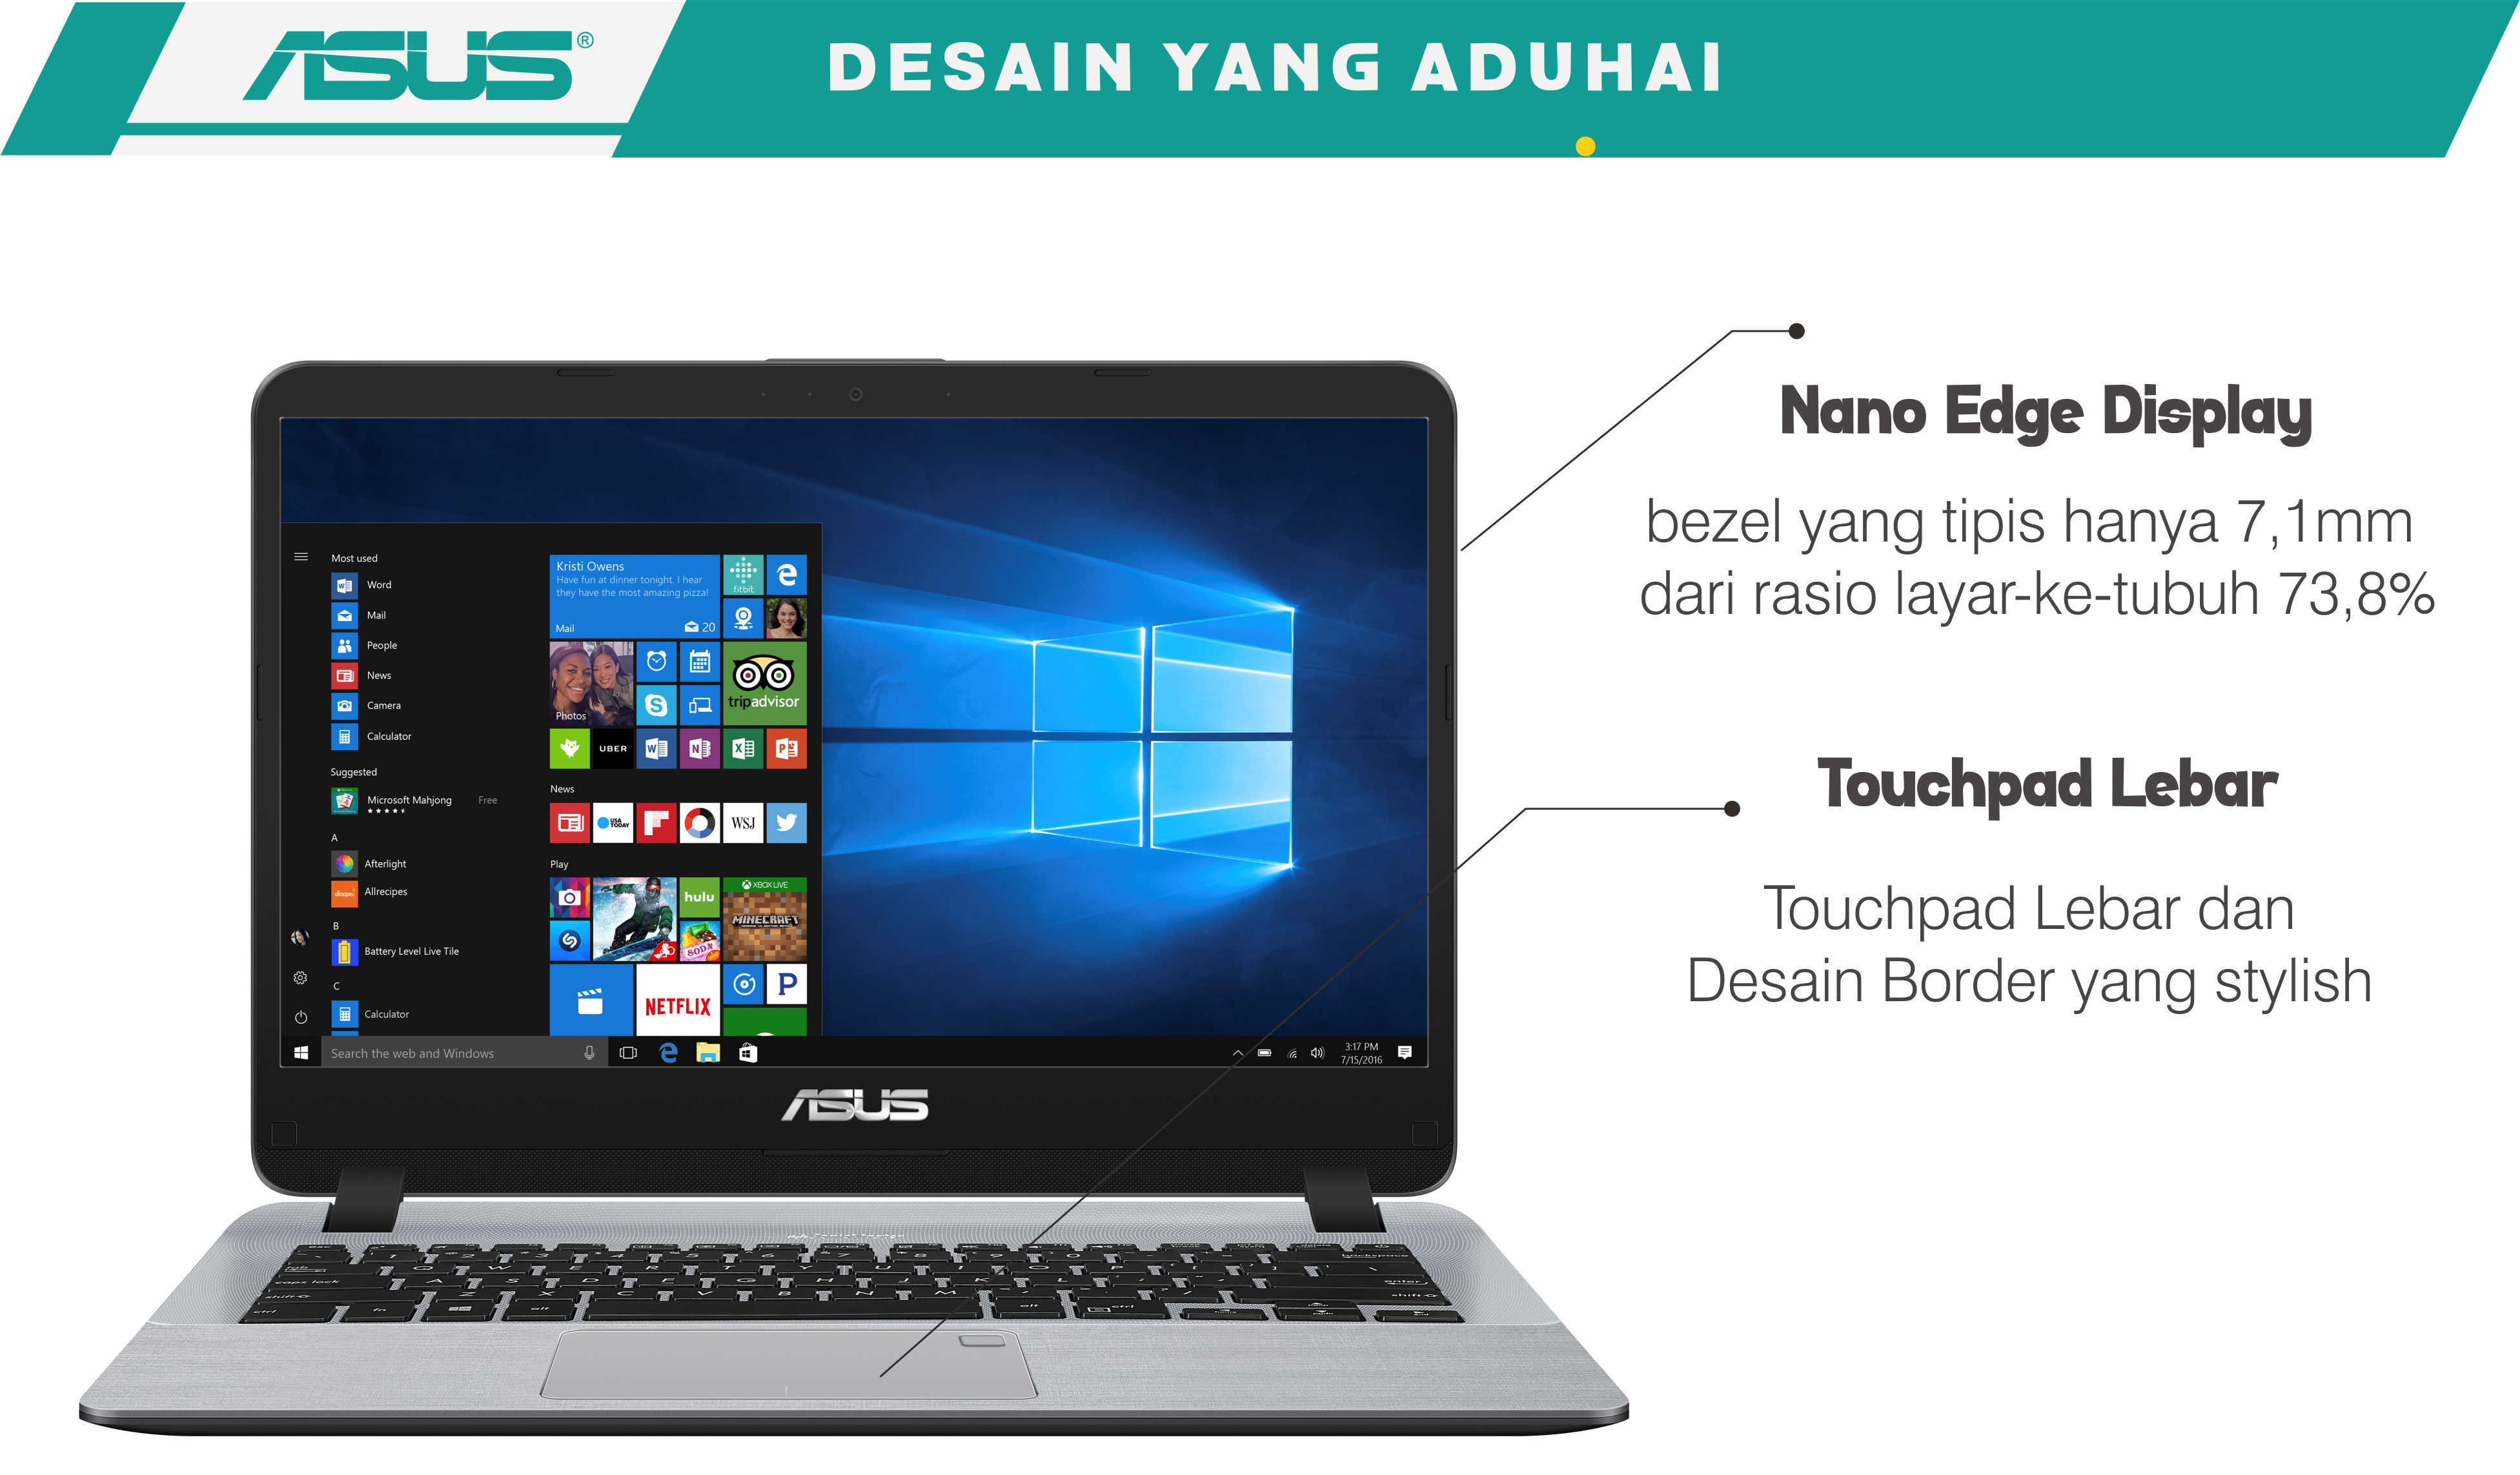 Asus Vivobook A407 Tampil Stylish, Pilihan Kaum Millennial dengan Fingerprint dan Performa Gahar